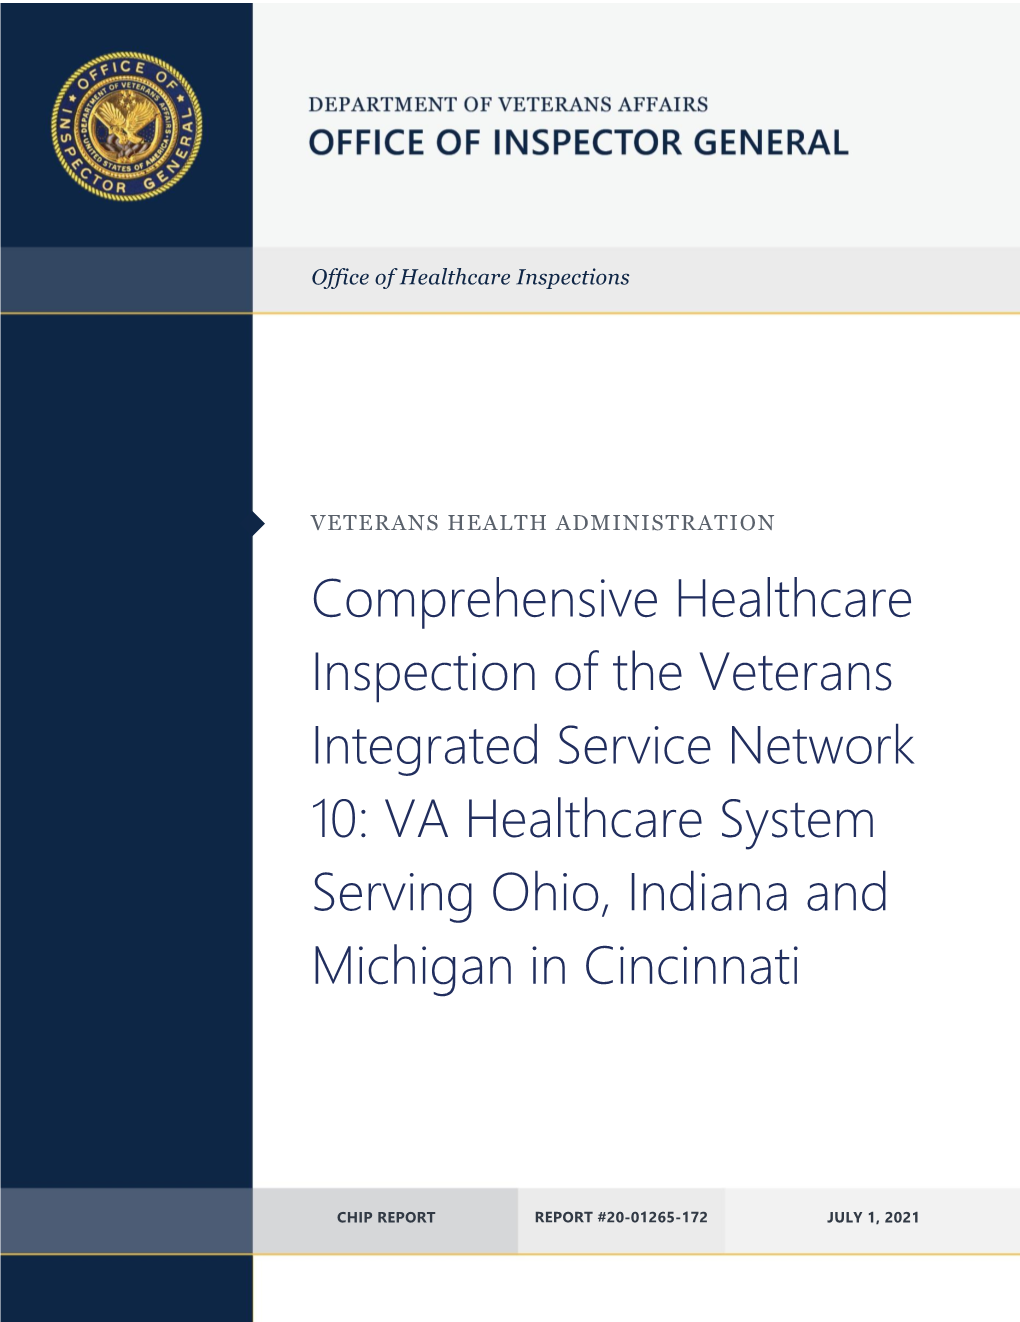 VA Healthcare System Serving Ohio, Indiana and Michigan in Cincinnati